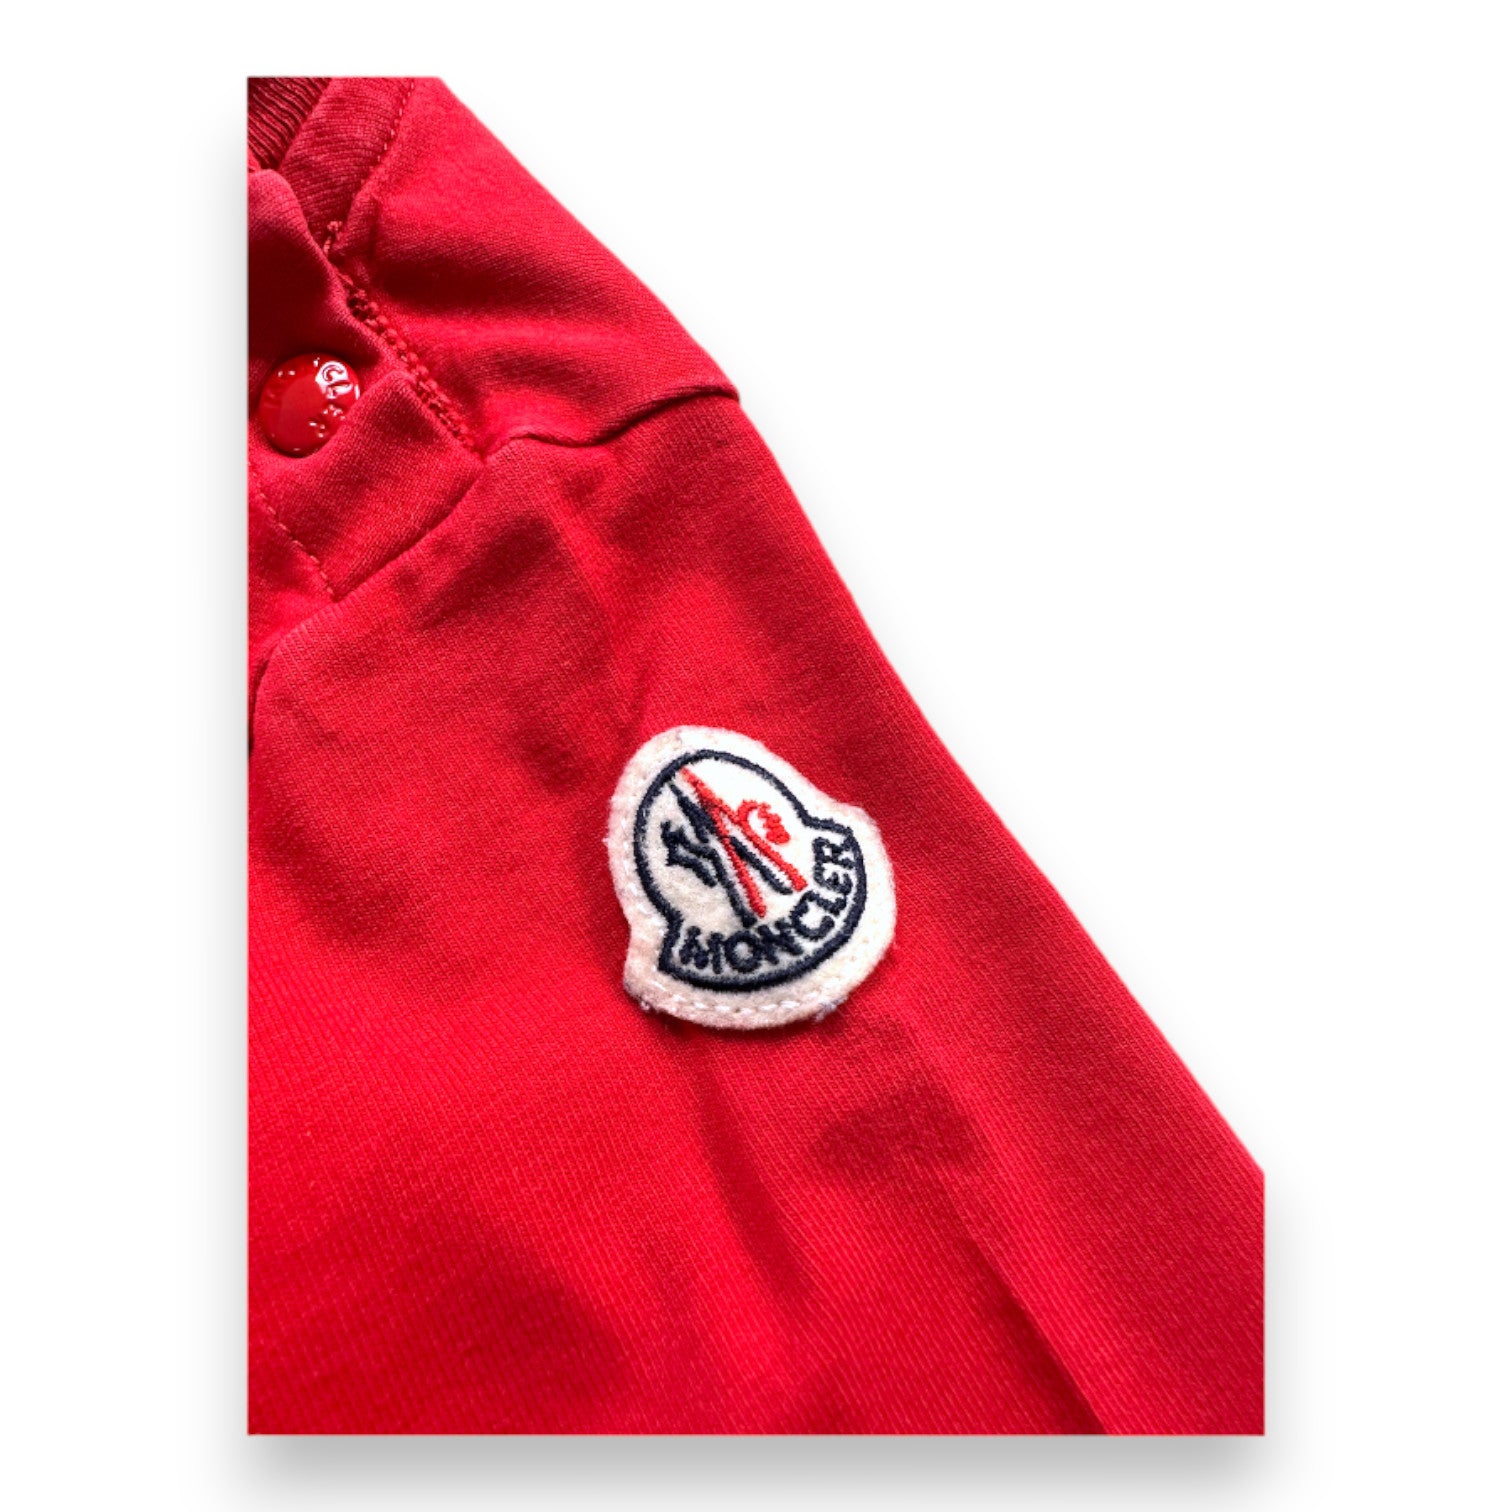 MONCLER - T-shirt à manches longues rouge avec imprimé - 3 mois